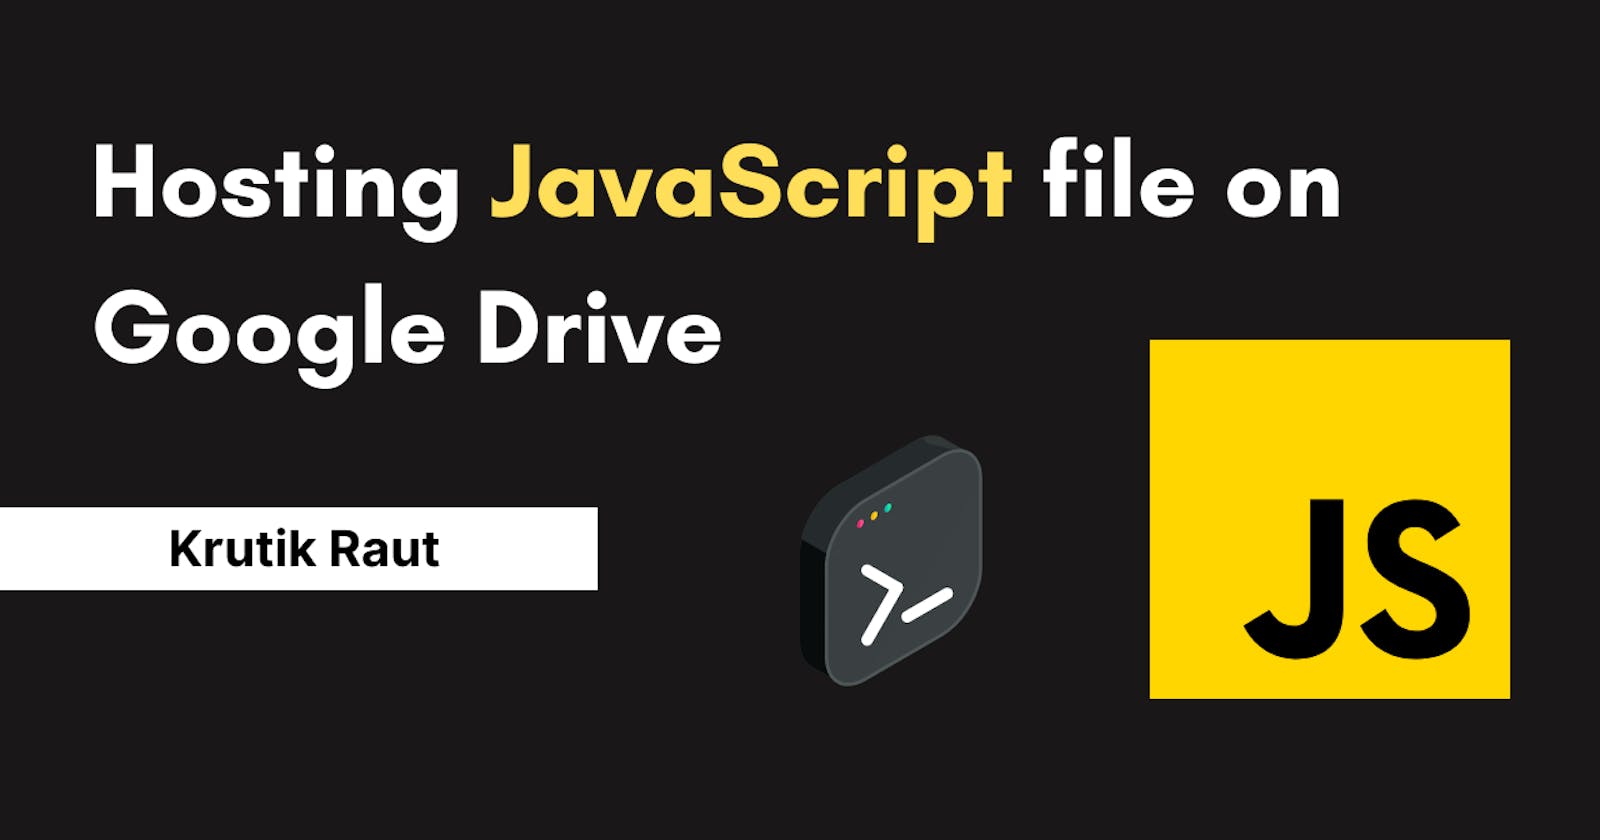 Hosting JavaScript file on Google Drive